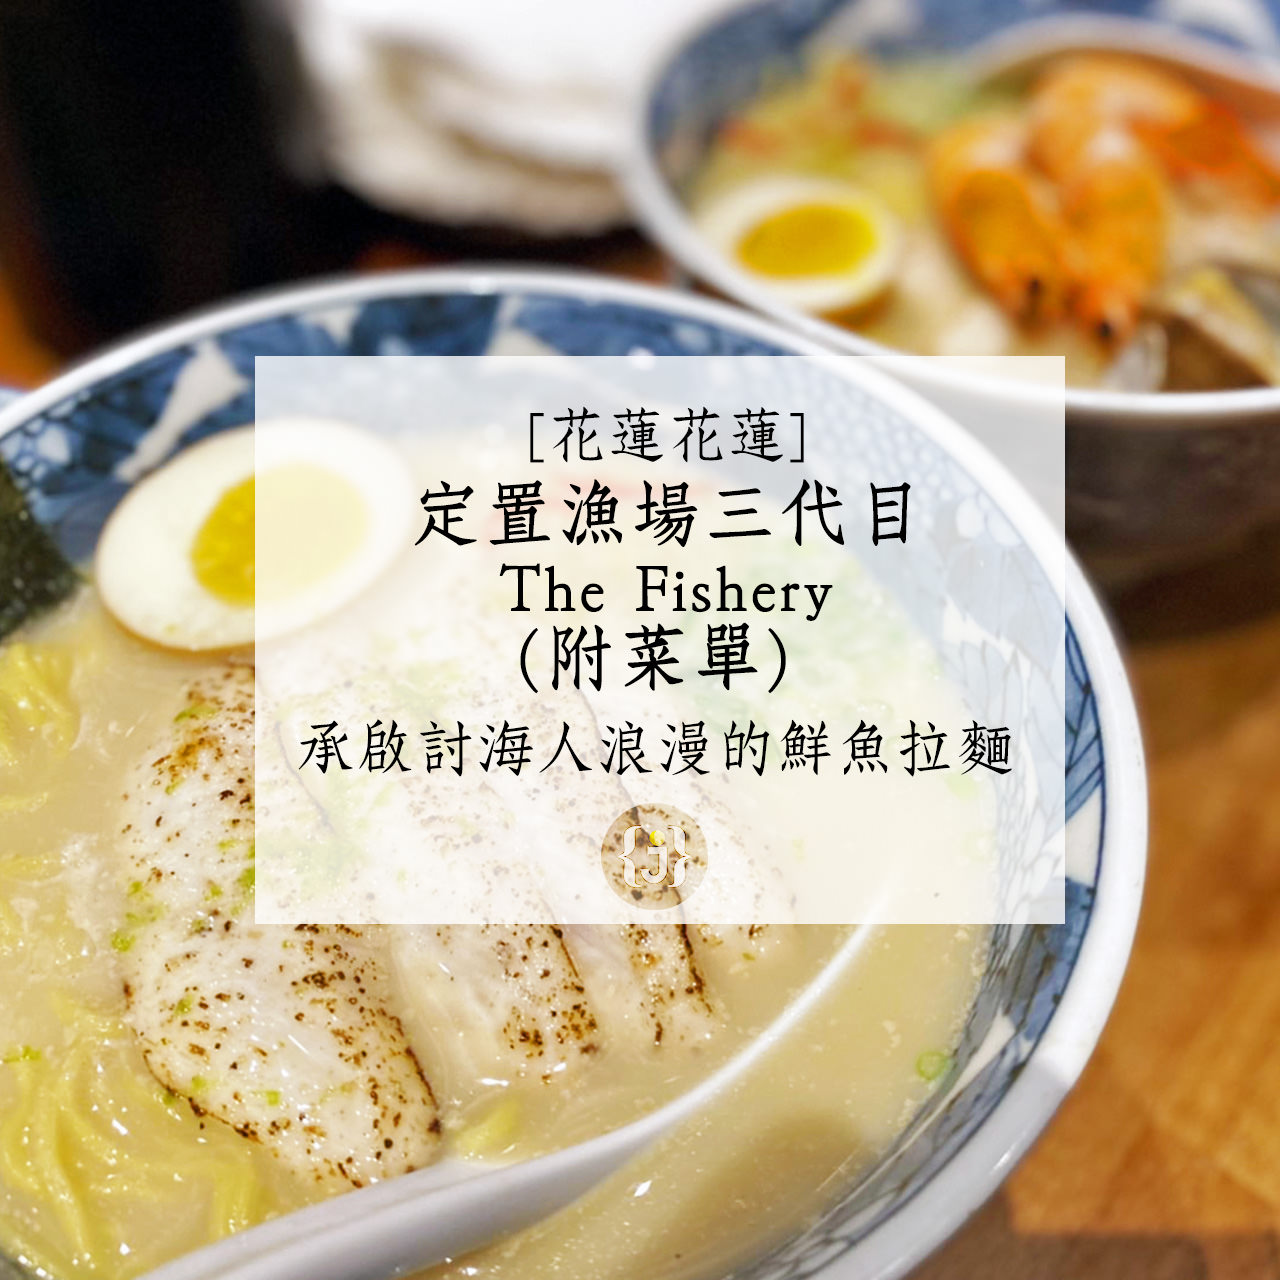 【花蓮花蓮】定置漁場三代目 The Fishery附菜單 承啟討海人浪漫的鮮魚拉麵